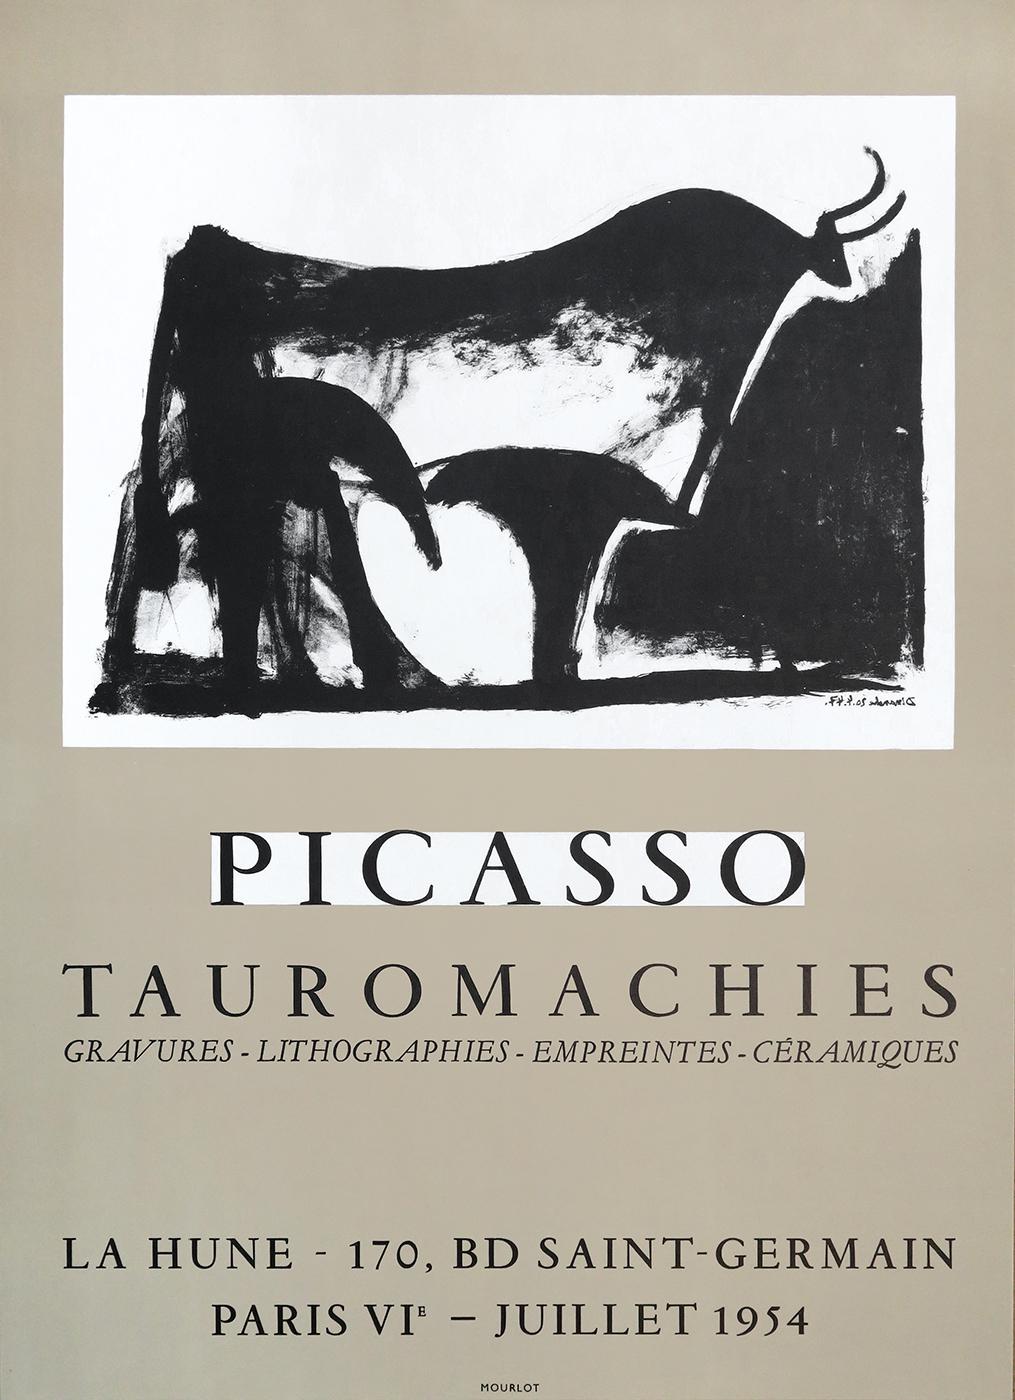 Künstler: Pablo Picasso 

Titel: Tauromachies

Jahr: 1954

Auflage: 500 

Raisonnée-Katalog: Czwiklitzer n° 99

Größe: 41 x 57 cm.